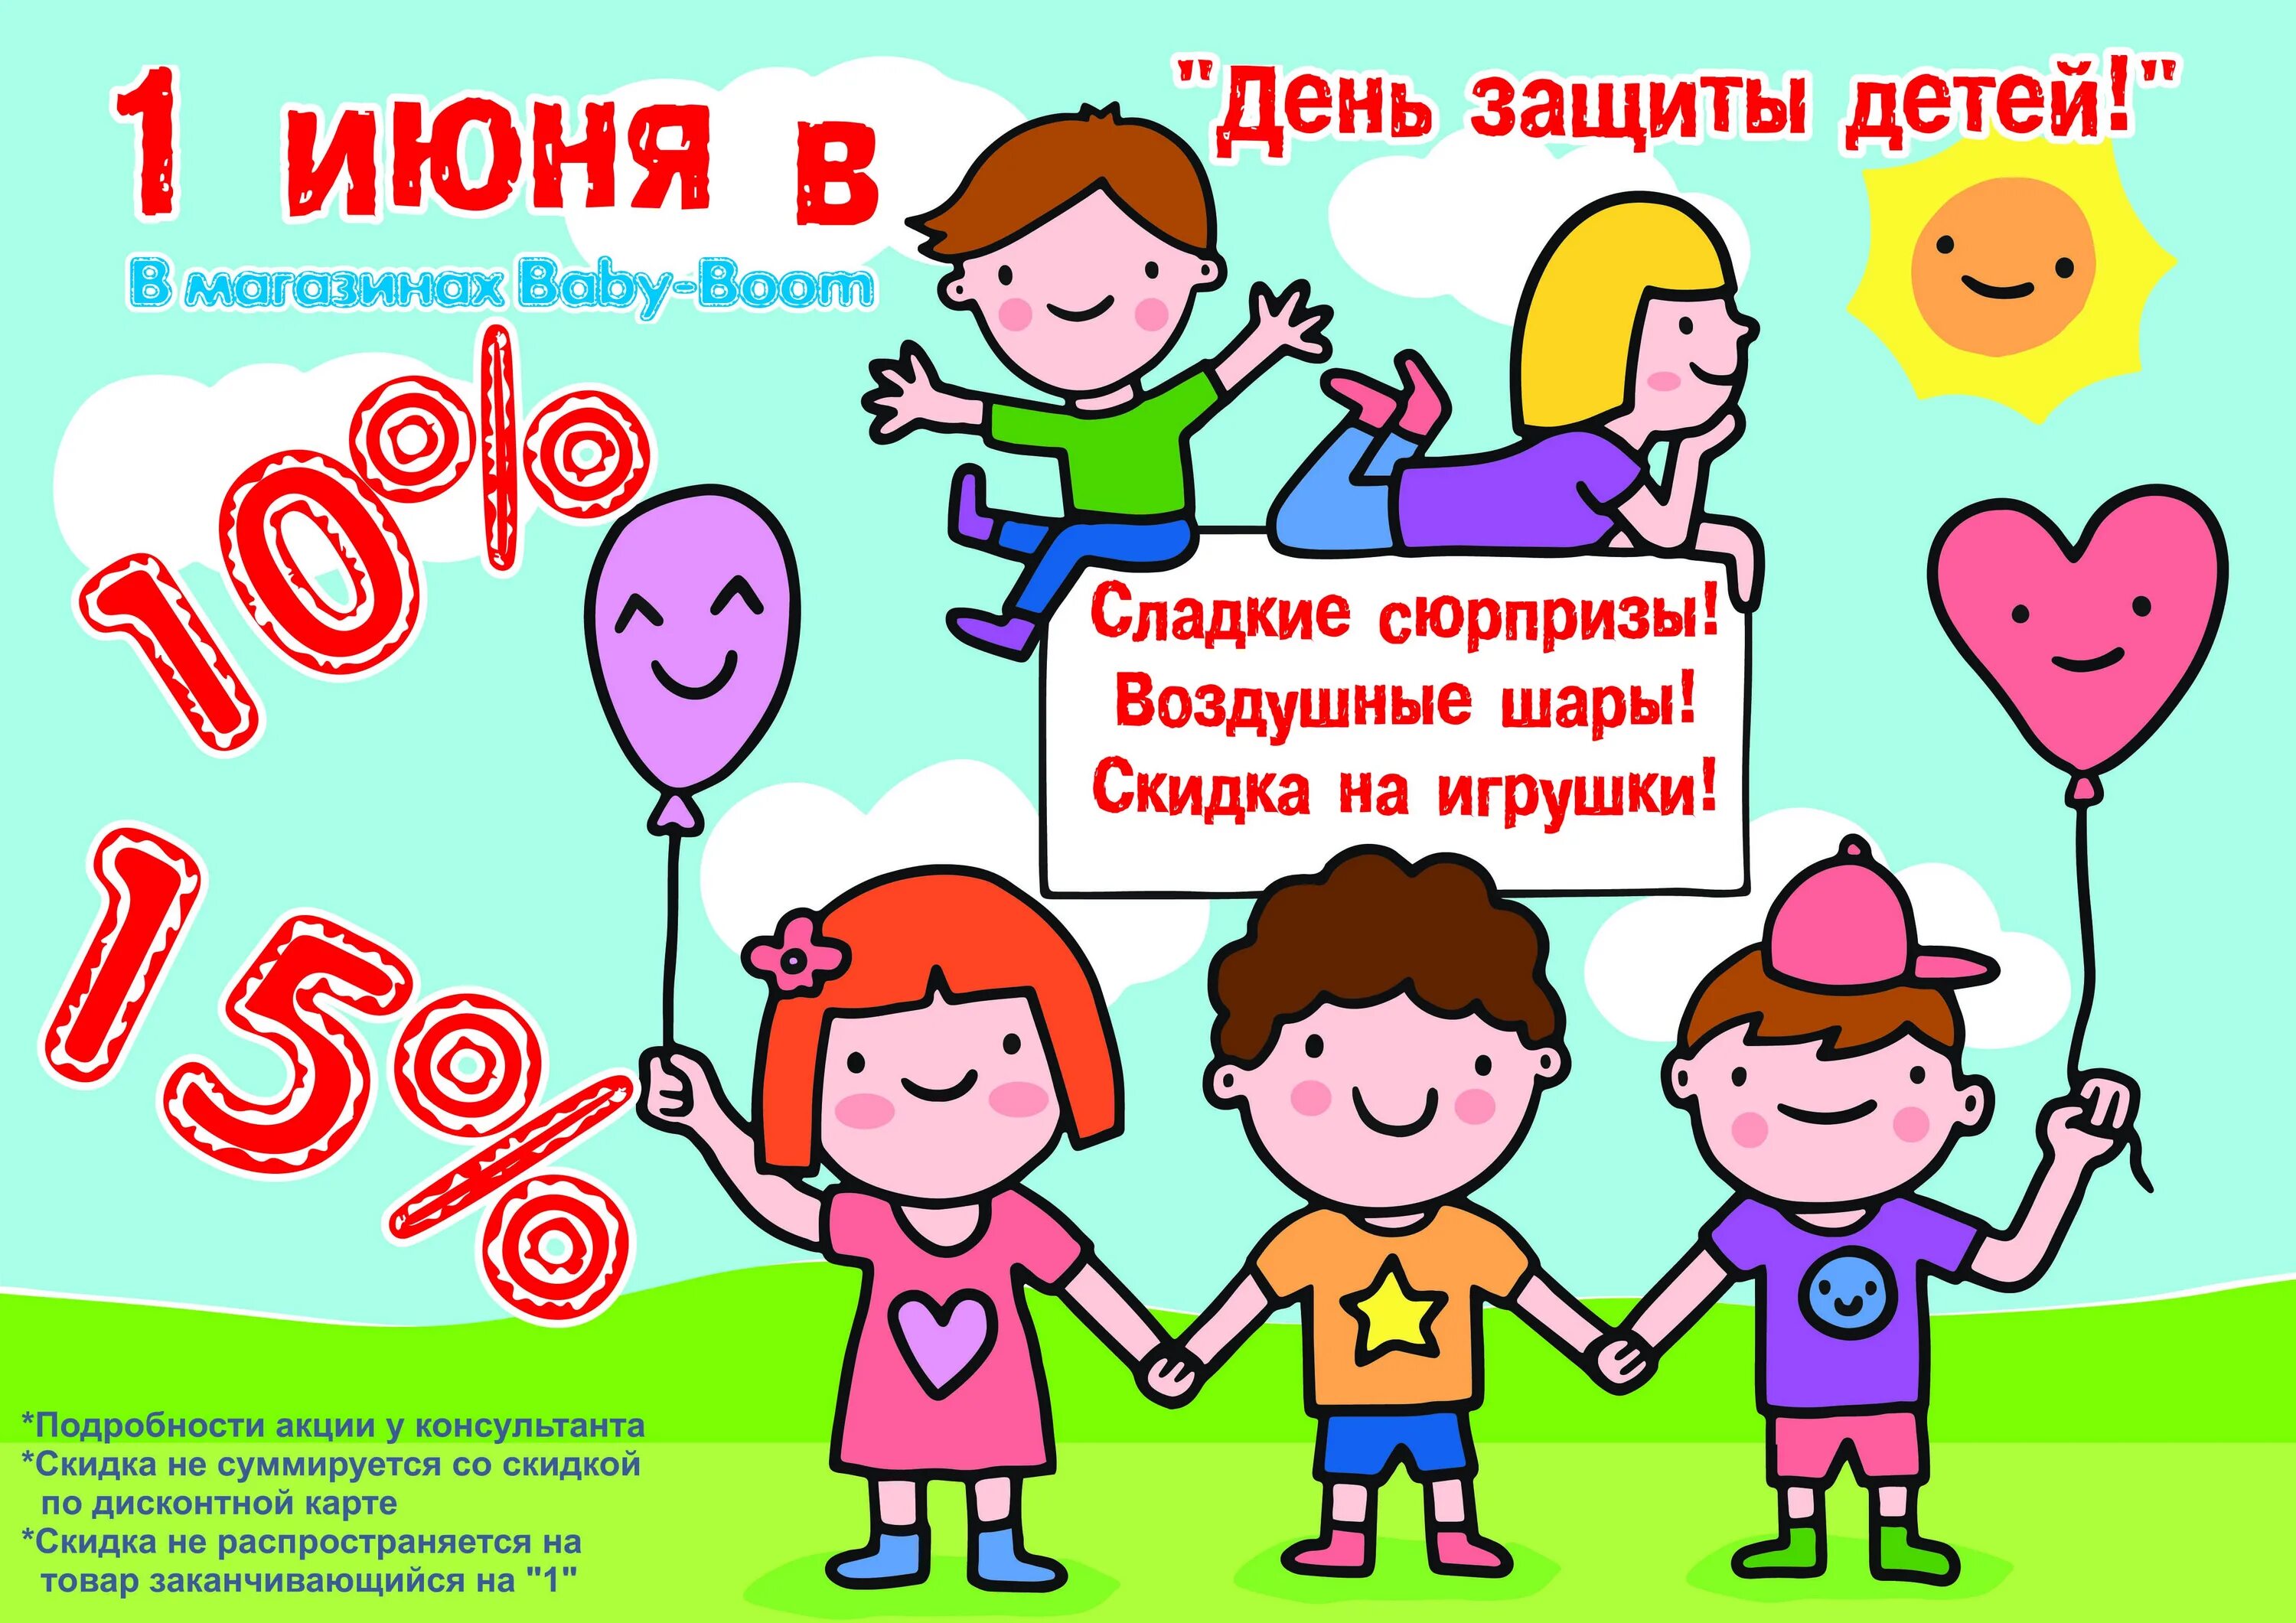 Время до 1 июня. День защиты детей скидки. Акция ко Дню защиты детей. 1 Июня день защиты детей. Акции ко Дню защиты детей в магазинах.